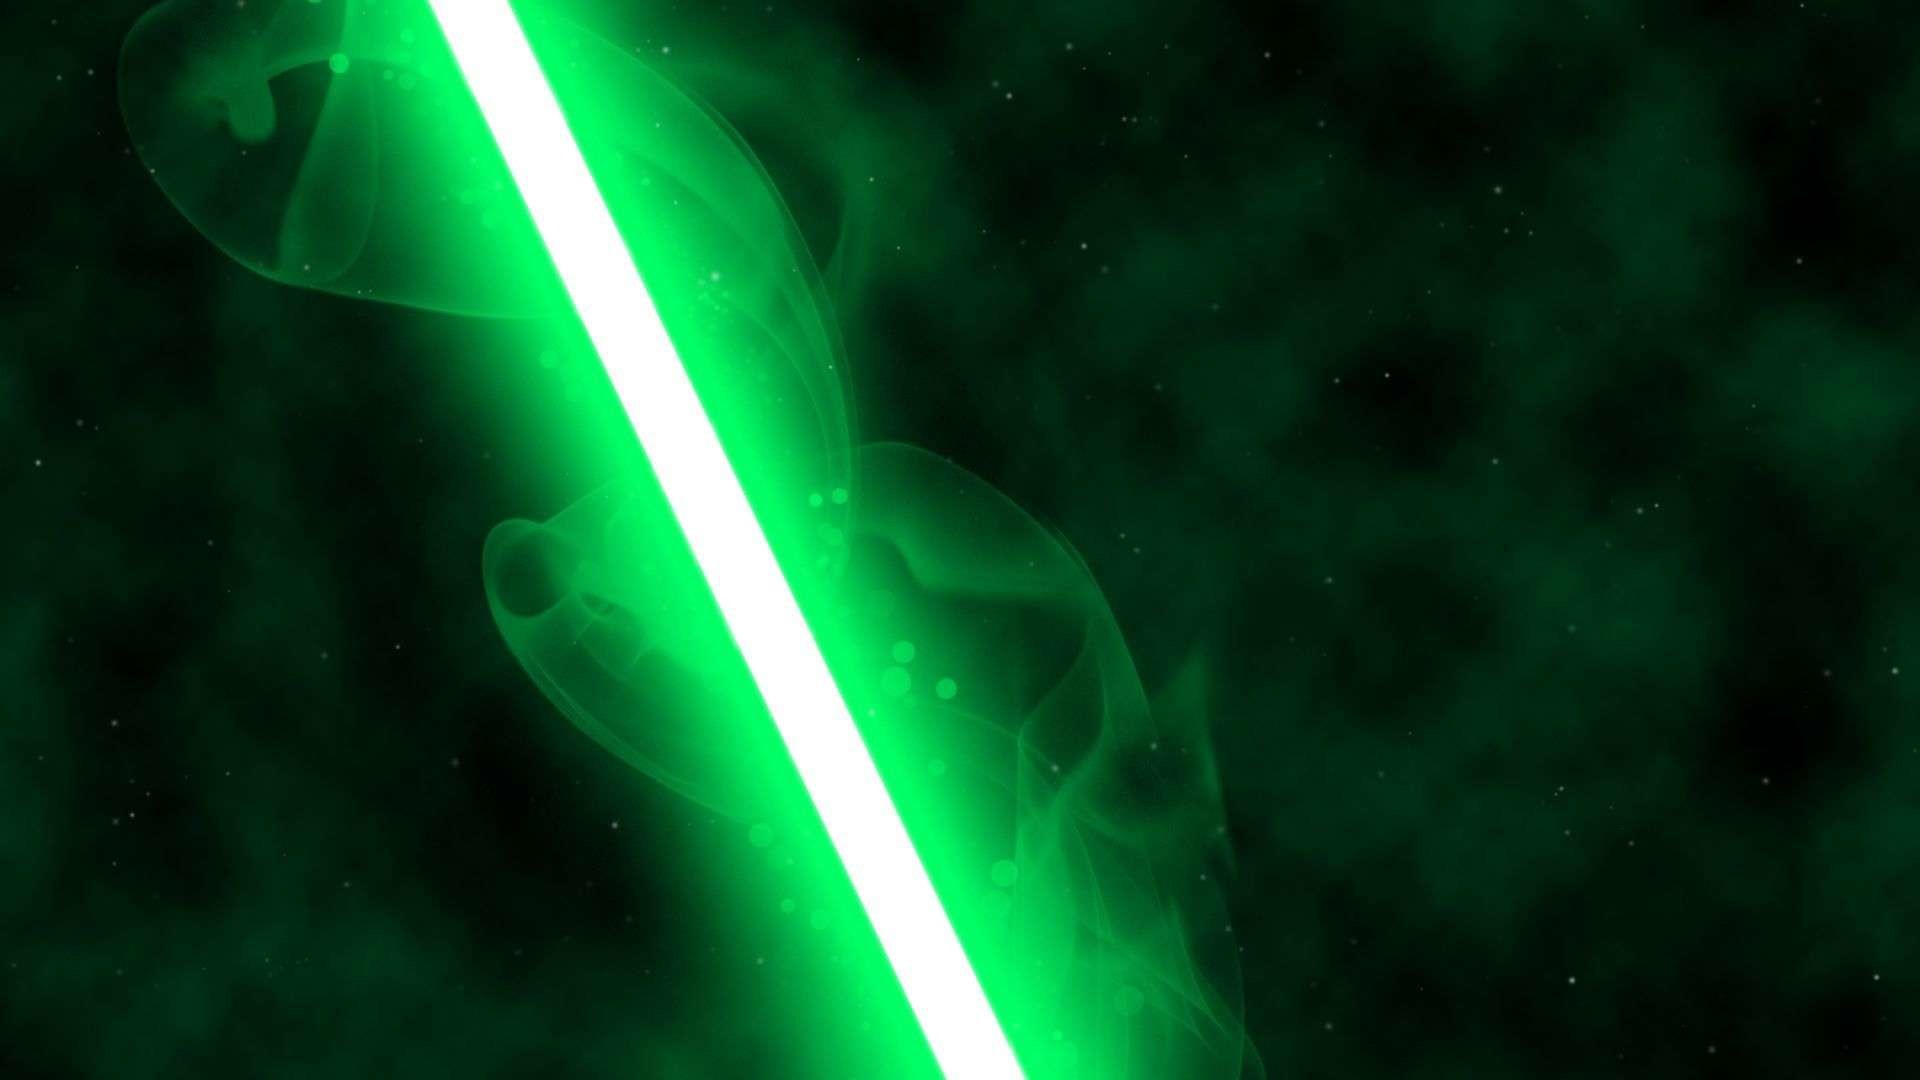 Стар ВАРС зеленый меч